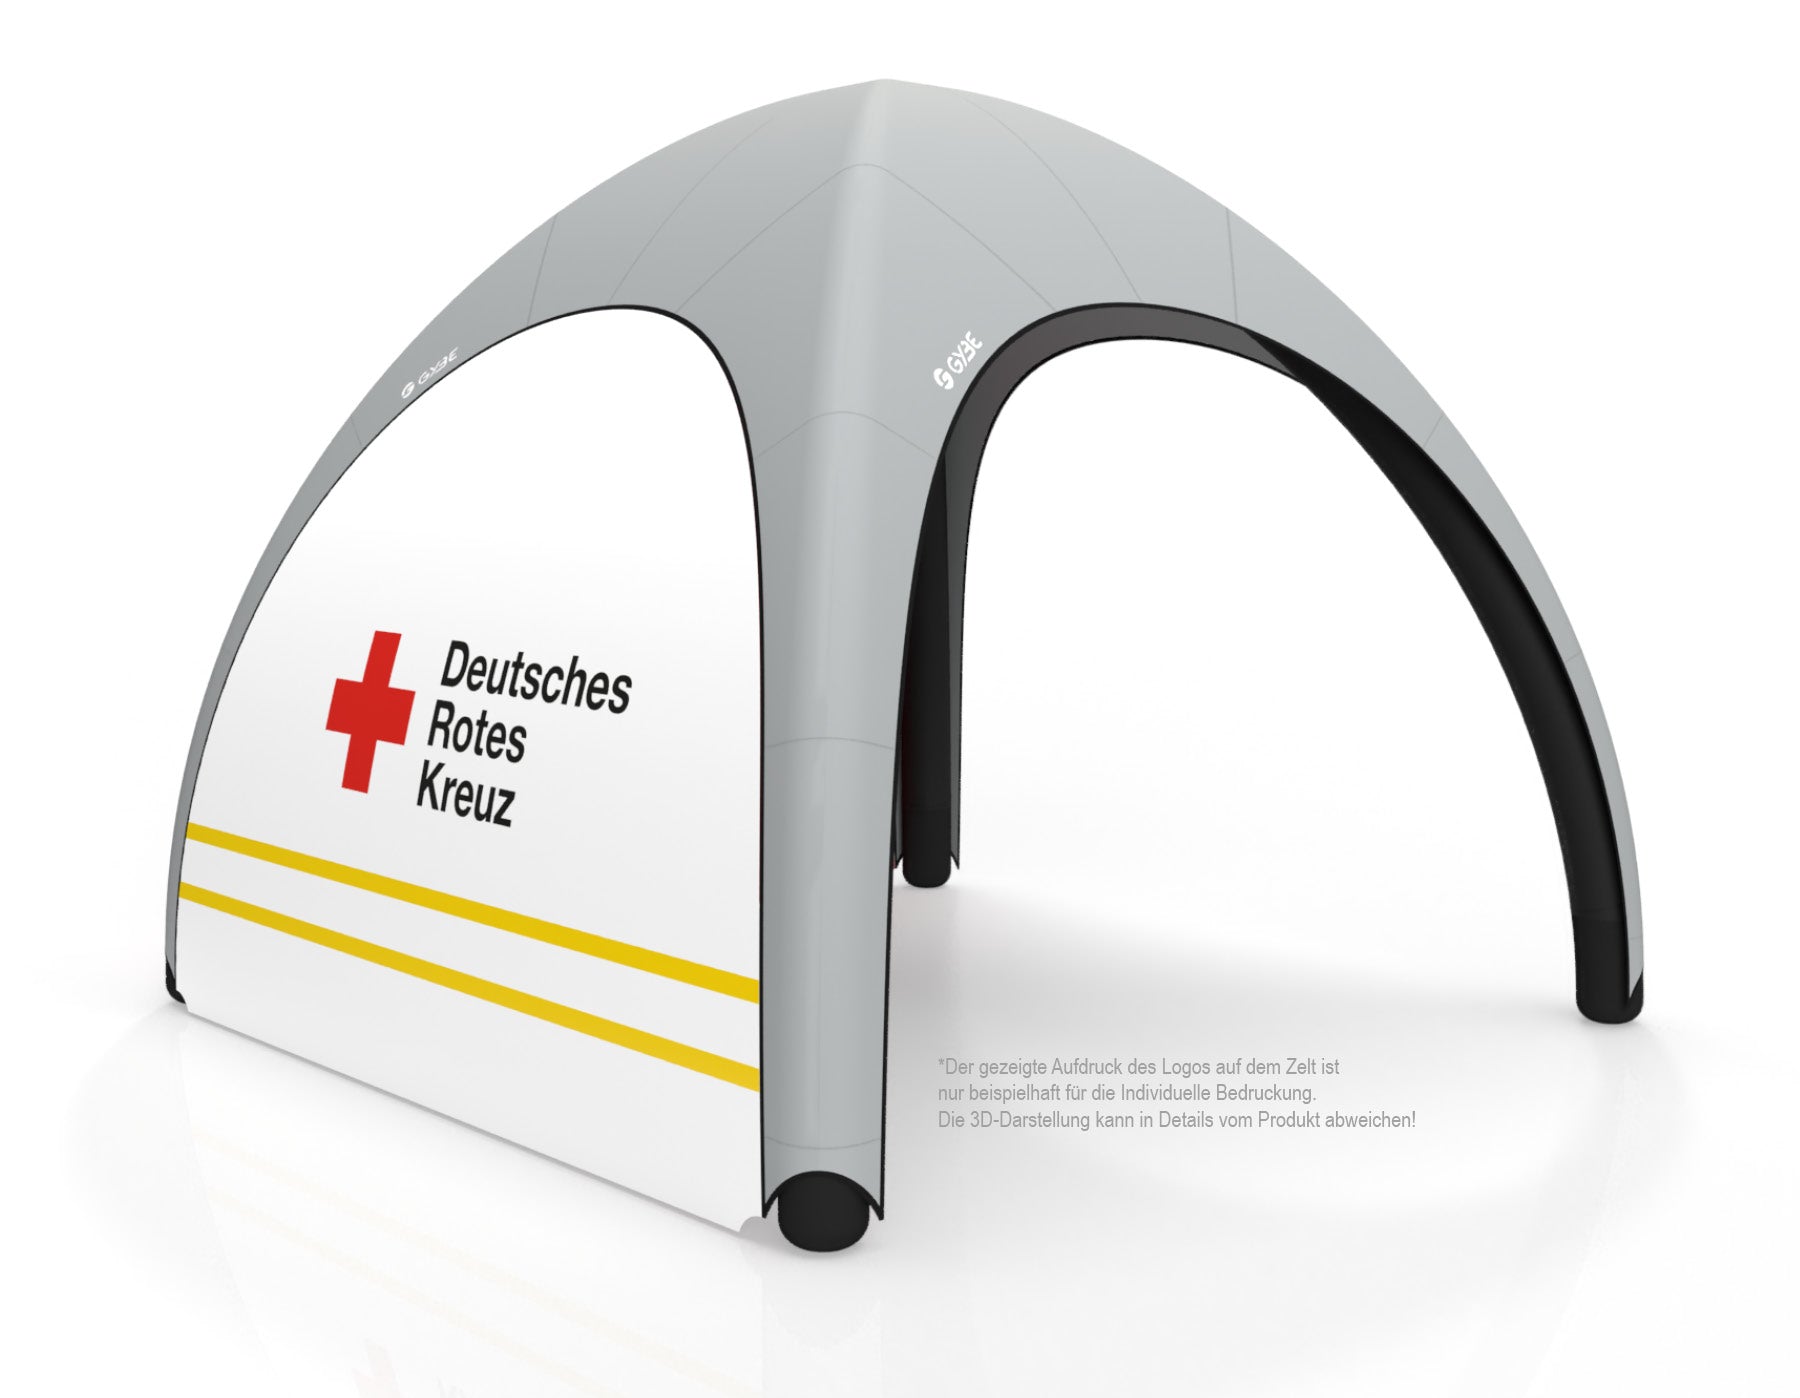 Aufblasbares Schnelleinsatzzelt Gybe Humanity Tent mit DRK Logo | Sanitätszelt | Einsatzzelt